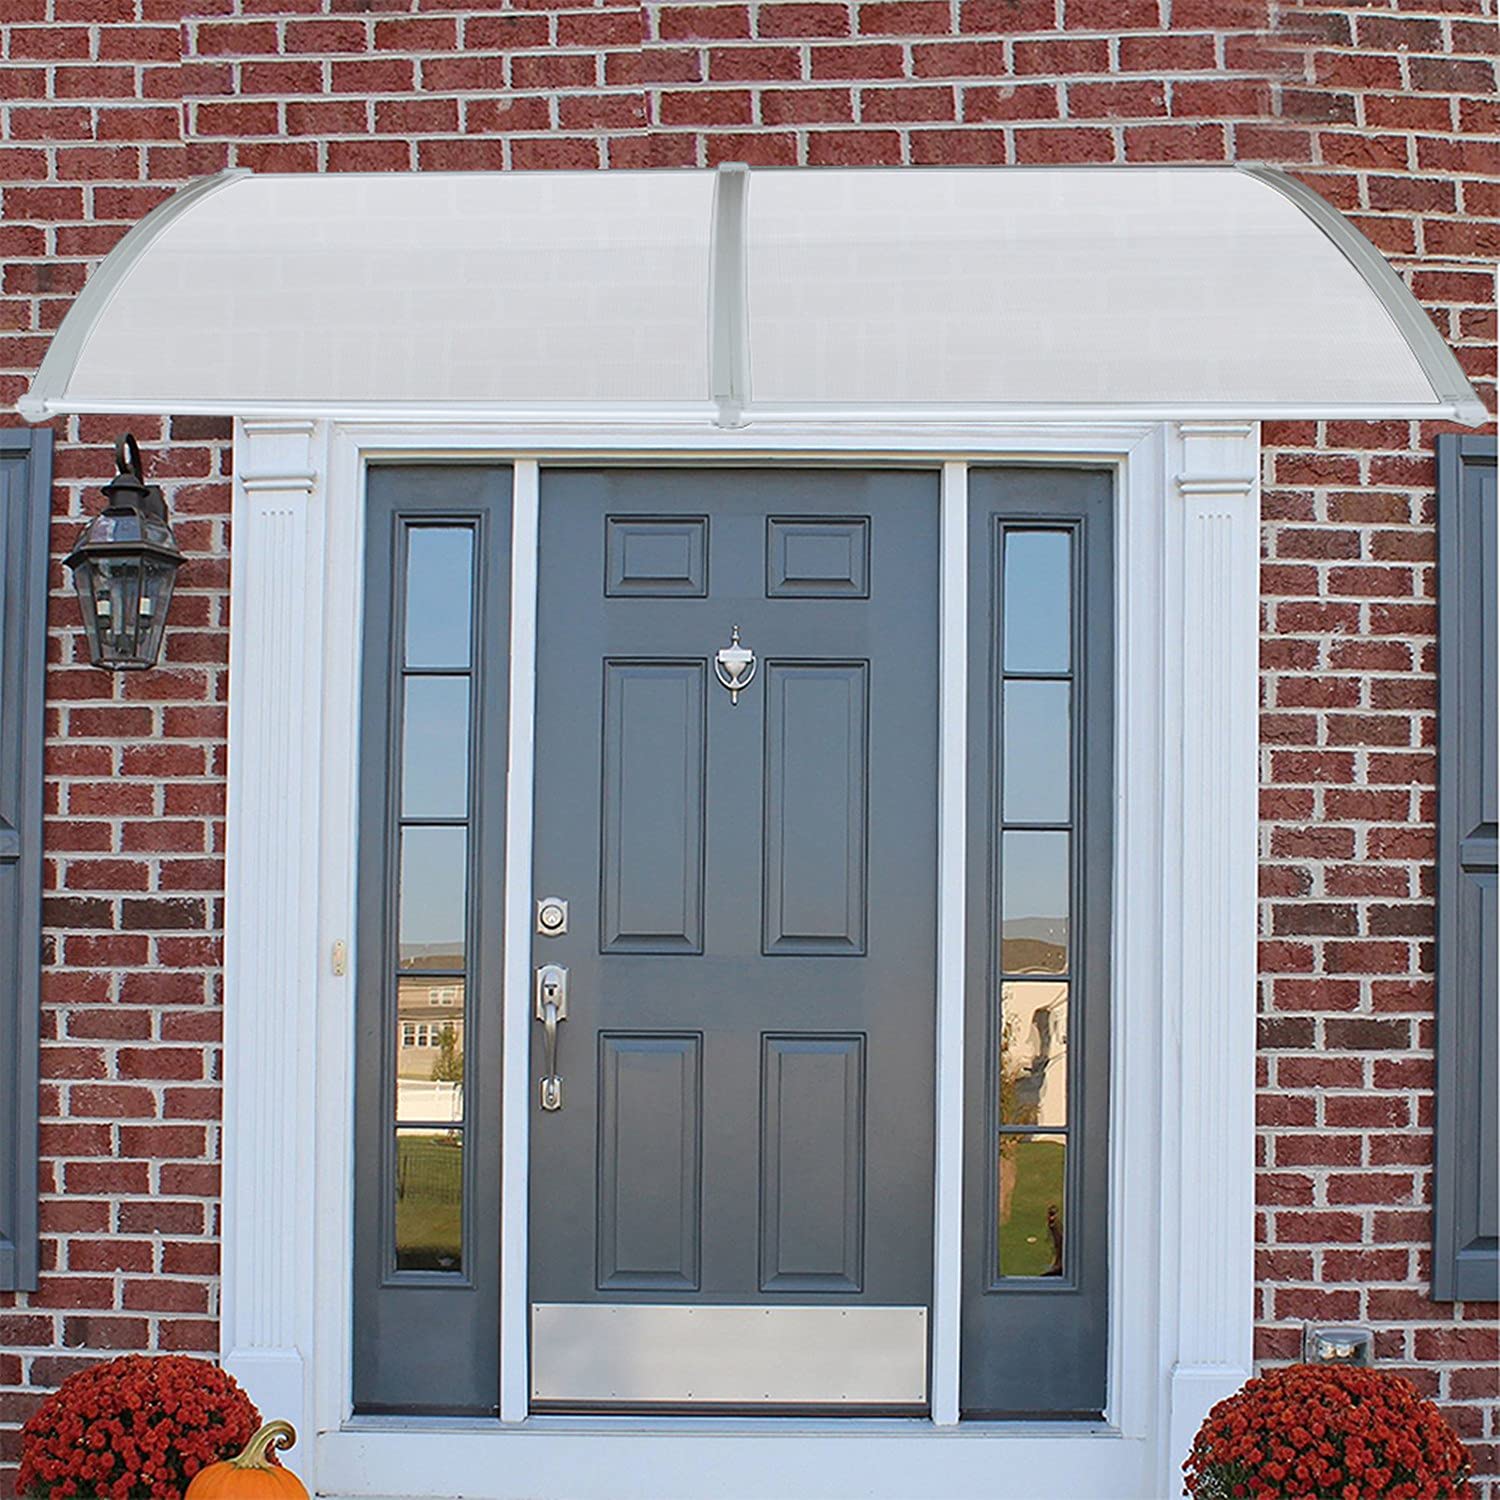 HUOLE Vordach für Tür, Aluminium, Vorzelt für Eingangstür, robust, Dach gegen Regen und UV-Strahlen (100 * 300cm)